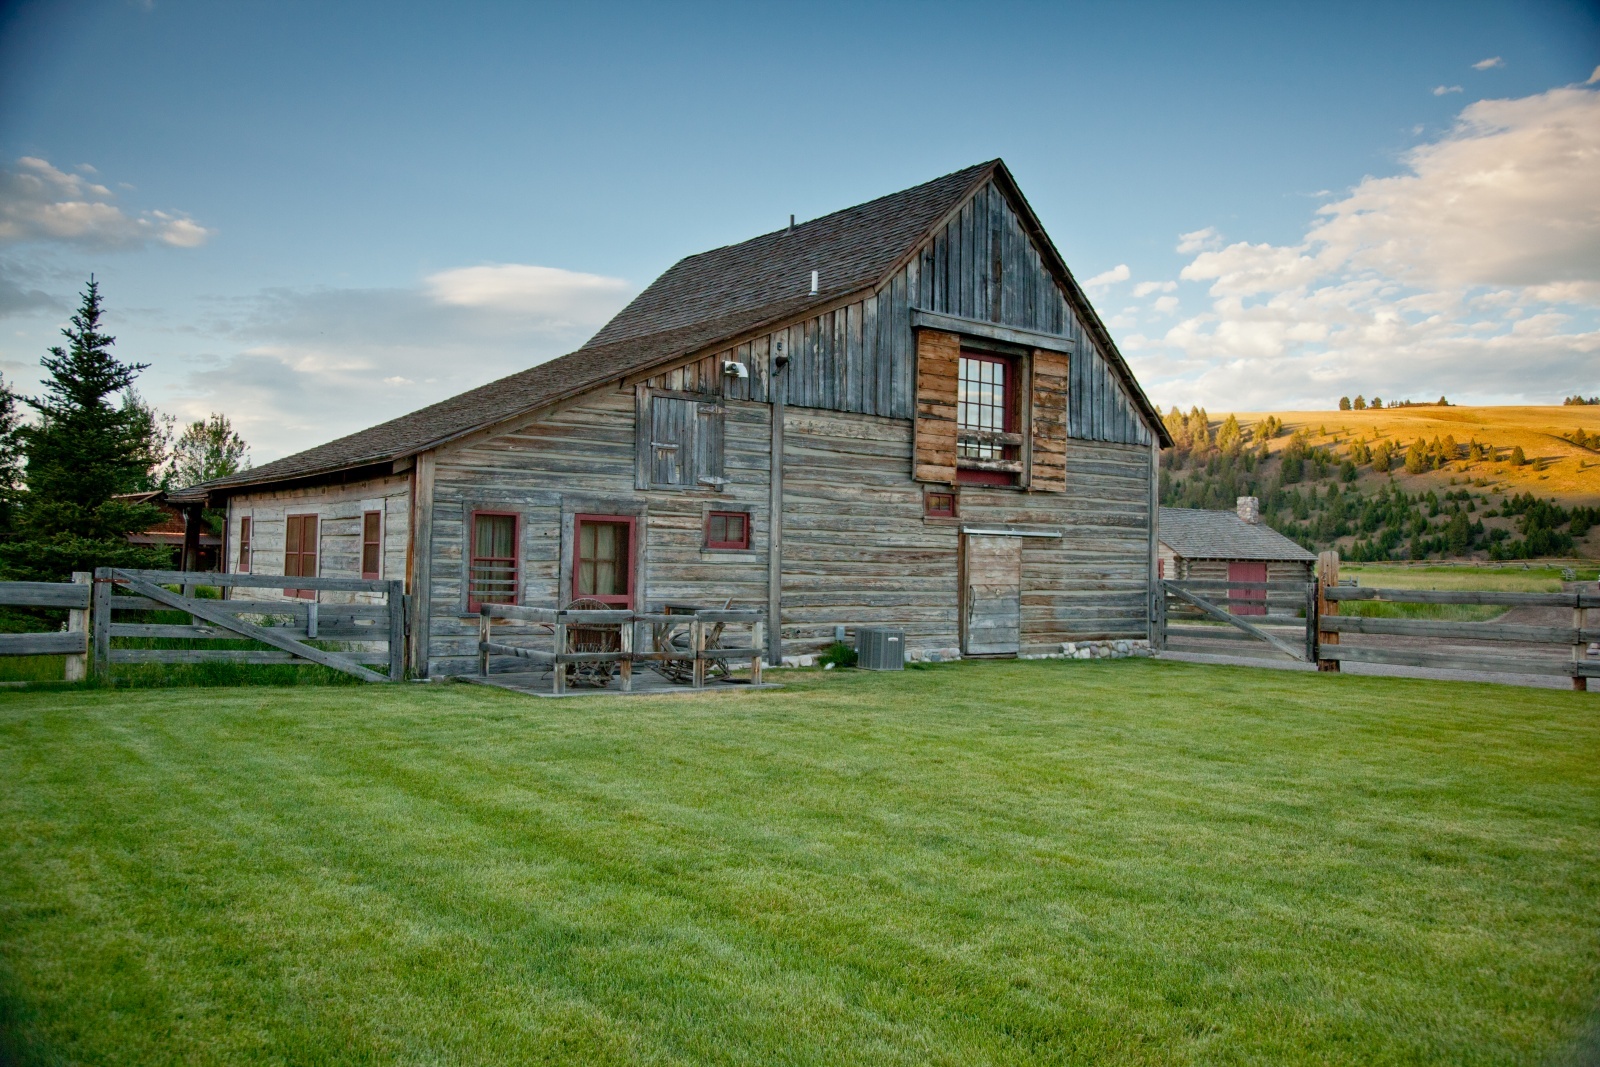 The Ranch At Rock Creek: отдых на ранчо в стиле деревенской роскоши